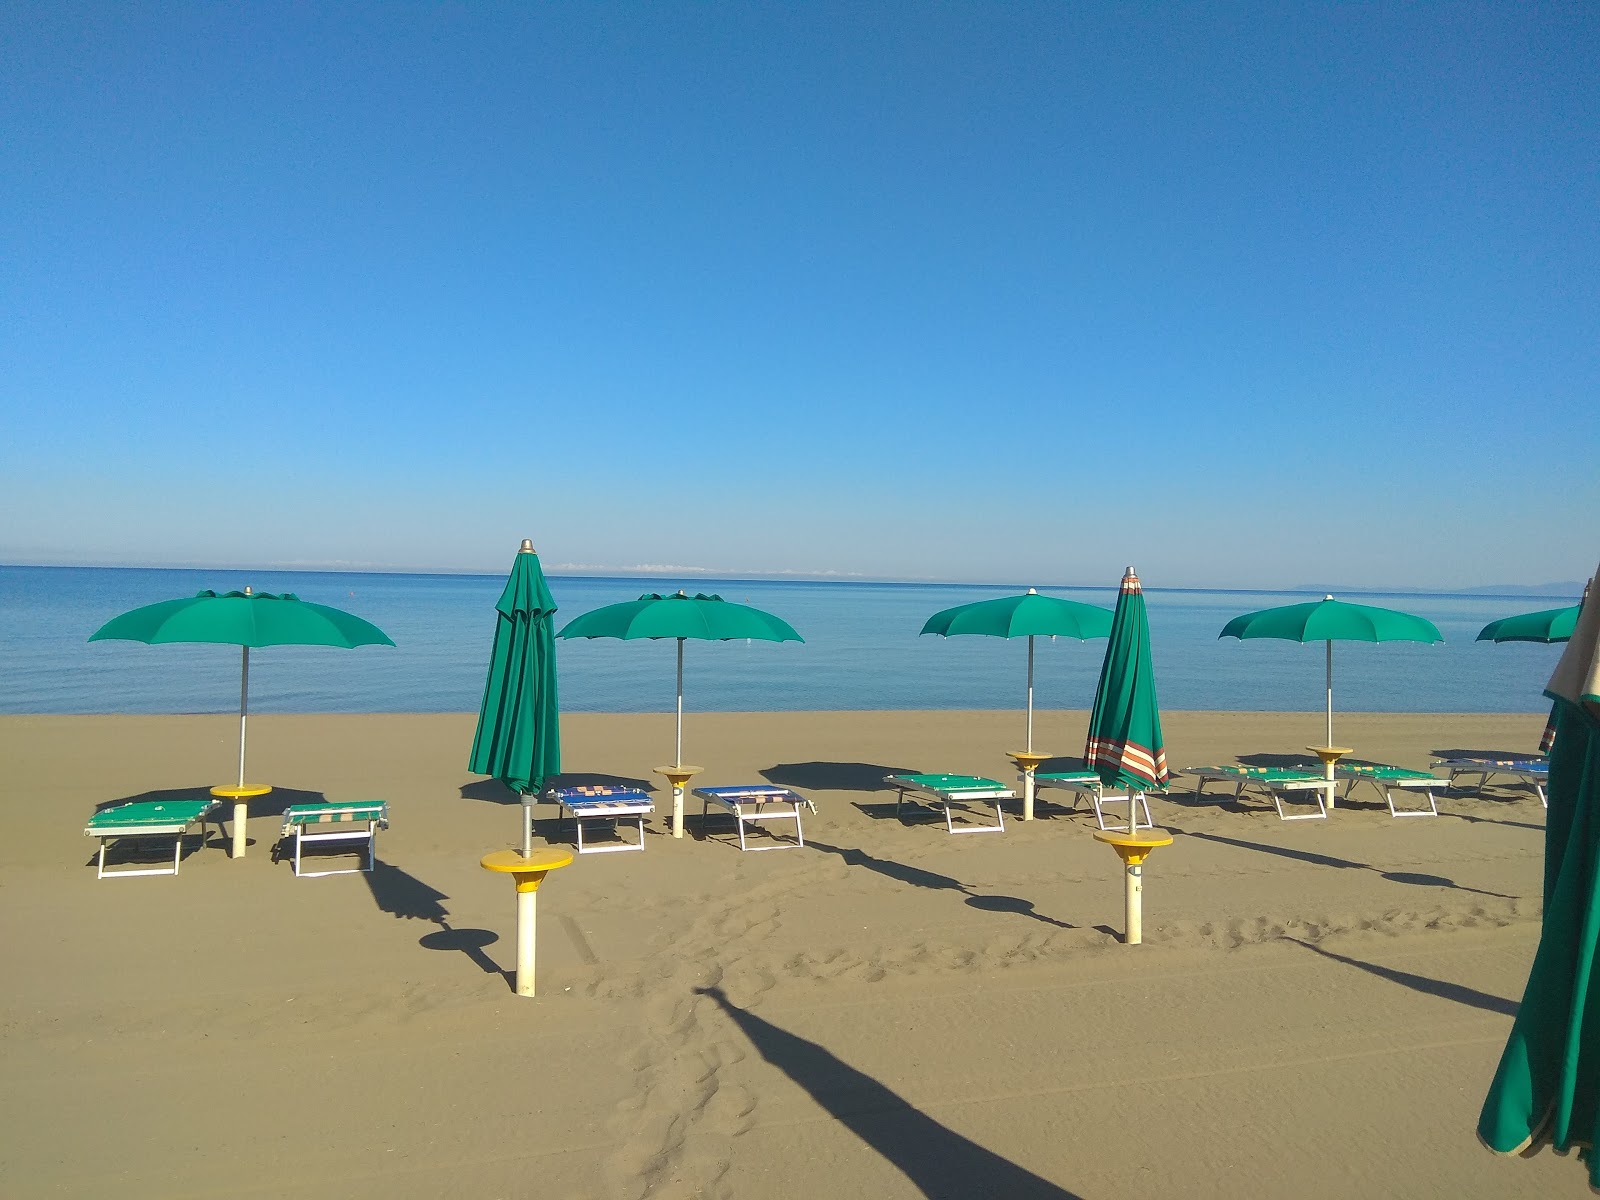 Foto af Spiaggia Florenzo - populært sted blandt afslapningskendere